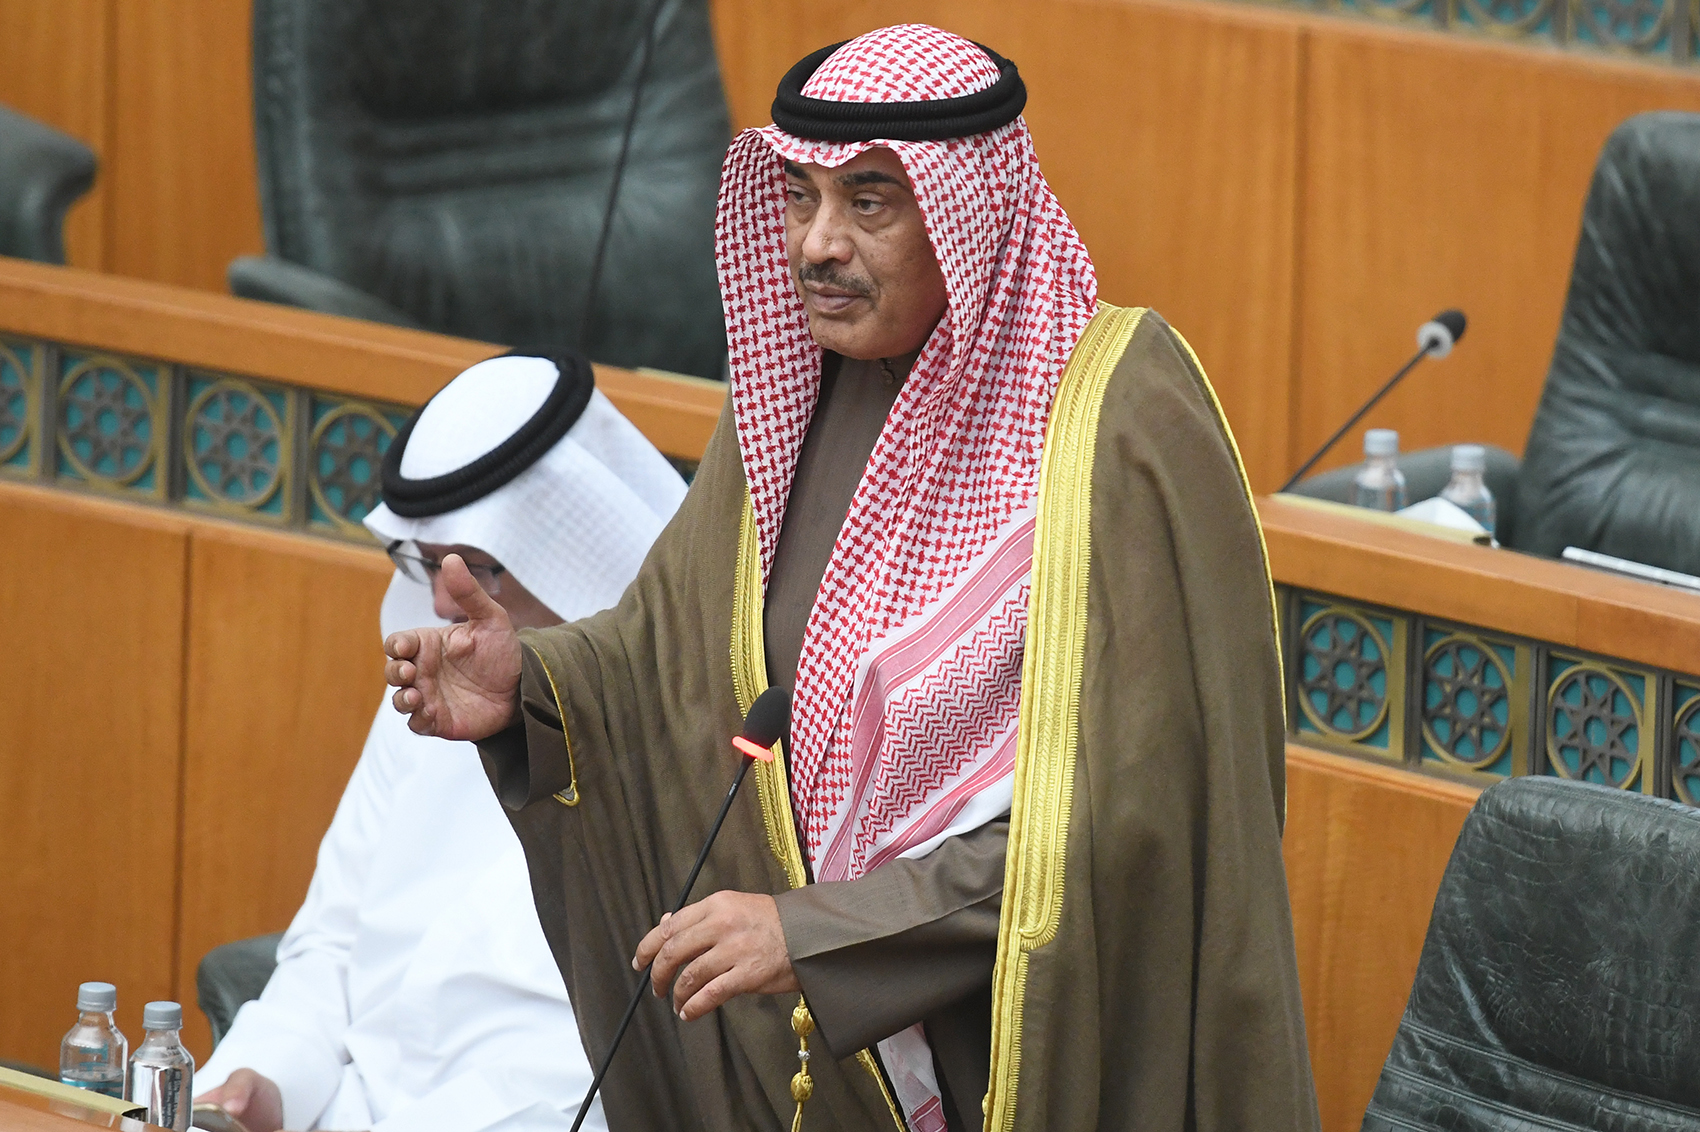 His Highness the Prime Minister Sheikh Sabah Khaled Al-Sabah